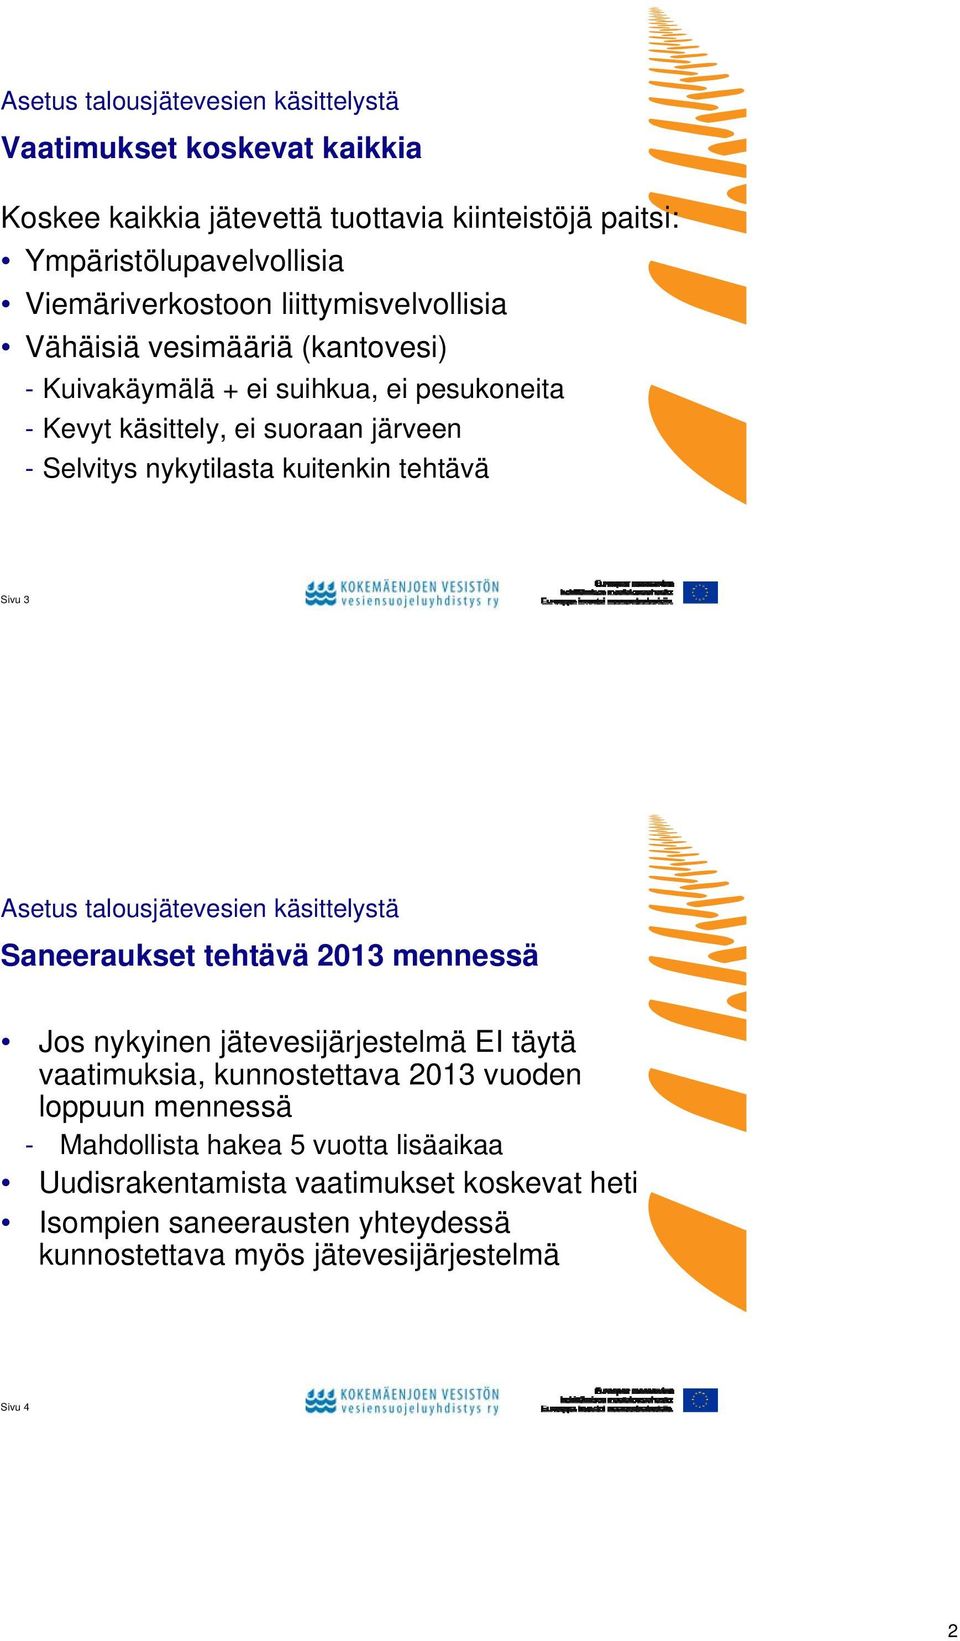 tehtävä Sivu 3 Asetus talousjätevesien käsittelystä Saneeraukset tehtävä 2013 mennessä Jos nykyinen jätevesijärjestelmä EI täytä vaatimuksia, kunnostettava 2013 vuoden